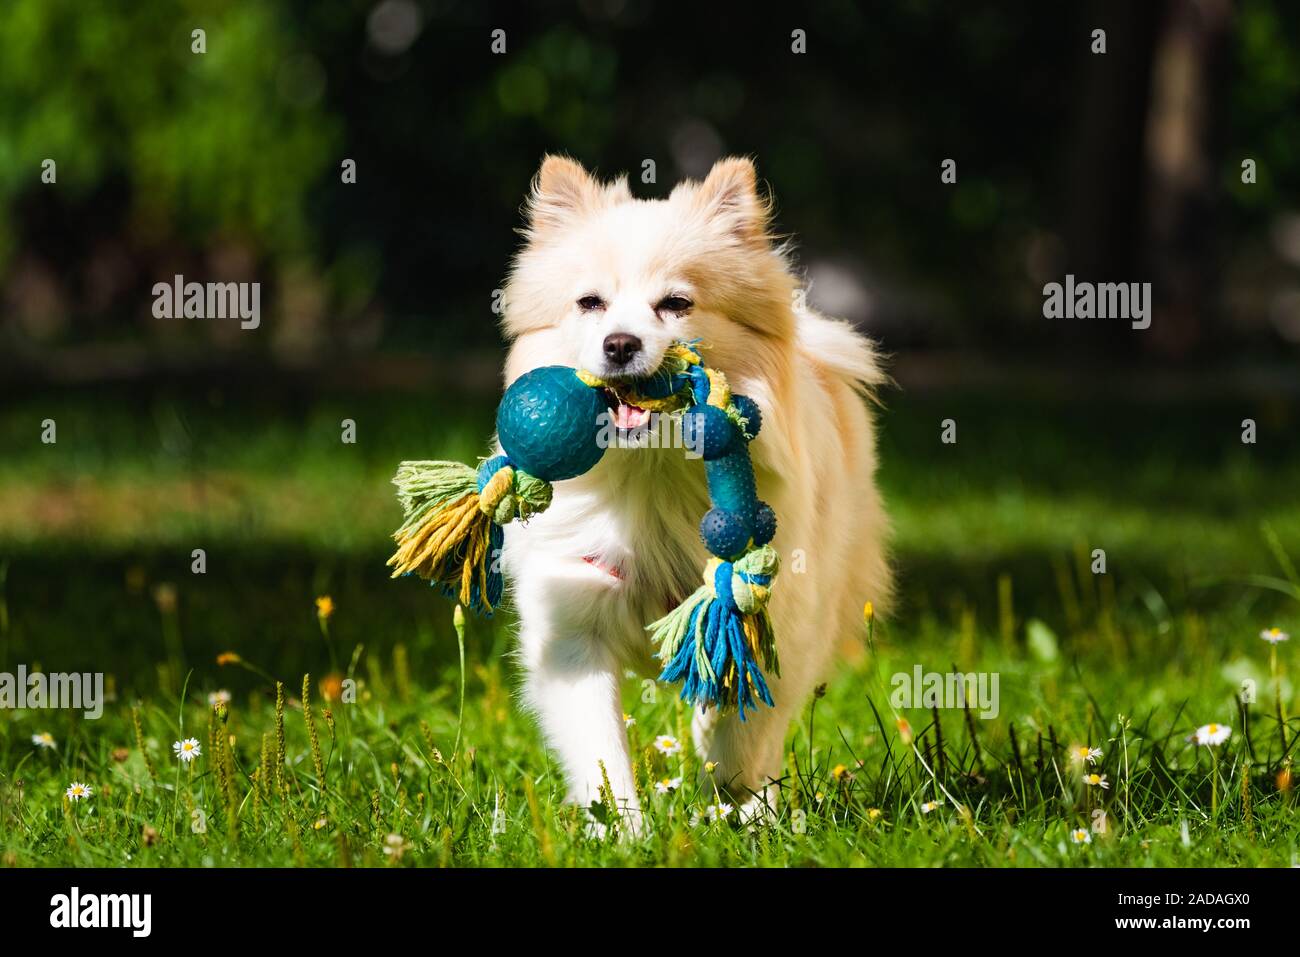 Cane di Pomerania Spitz tedesco klein fetch di un giocattolo che corre verso la telecamera. Foto Stock